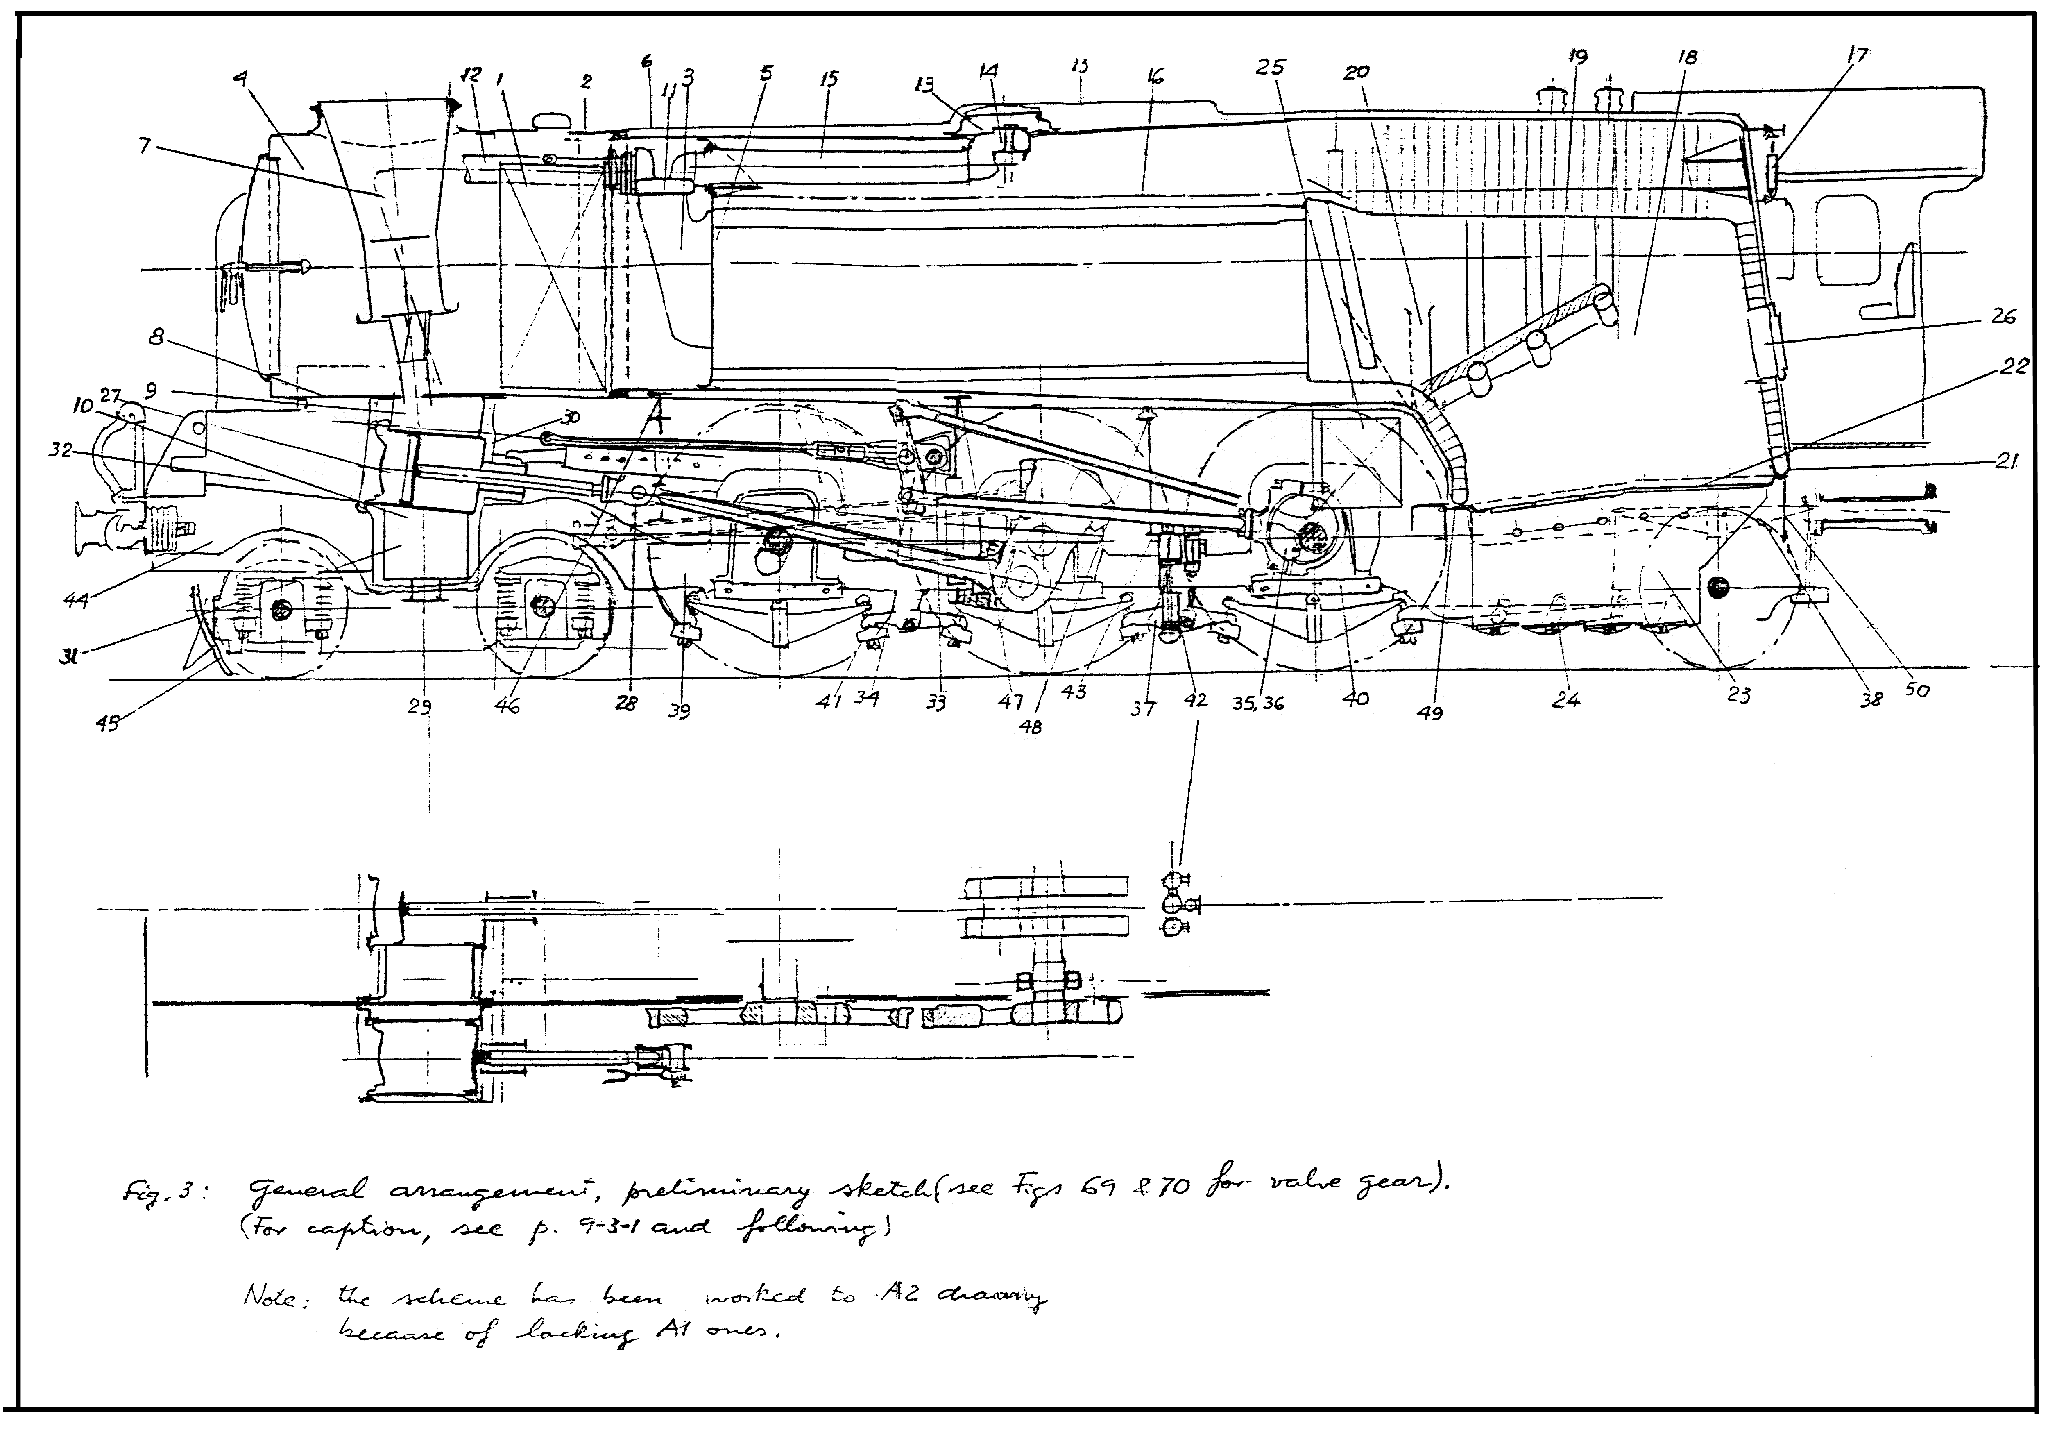 Fig.3: General arrangement - preliminary sketch.